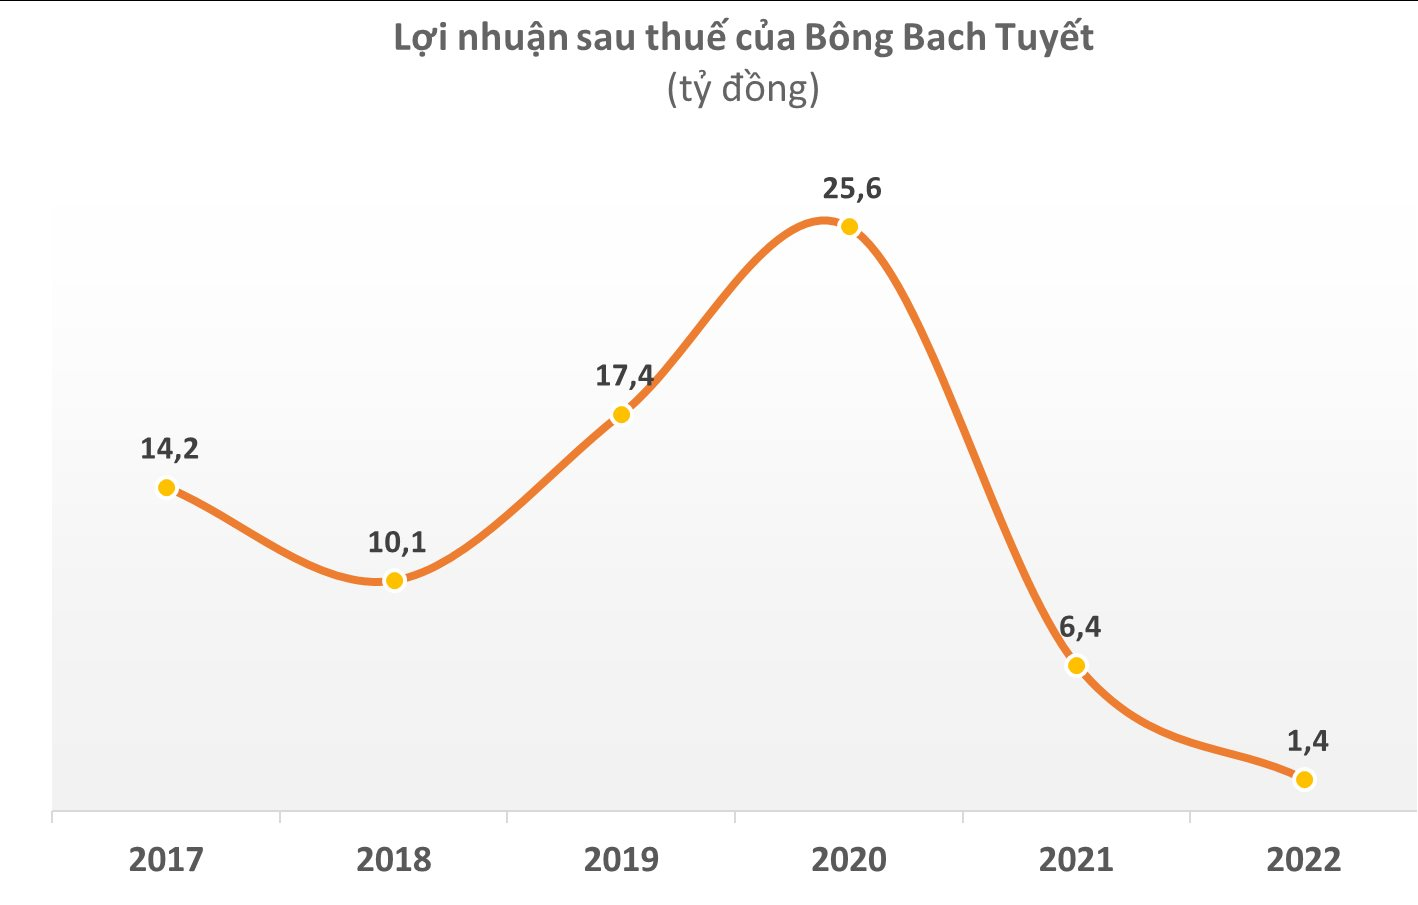 Bông Bạch Tuyết (BBT) bị xử phạt, truy thu thuế với số tiền gấp 4 lần lợi nhuận cả năm 2022 - Ảnh 1.